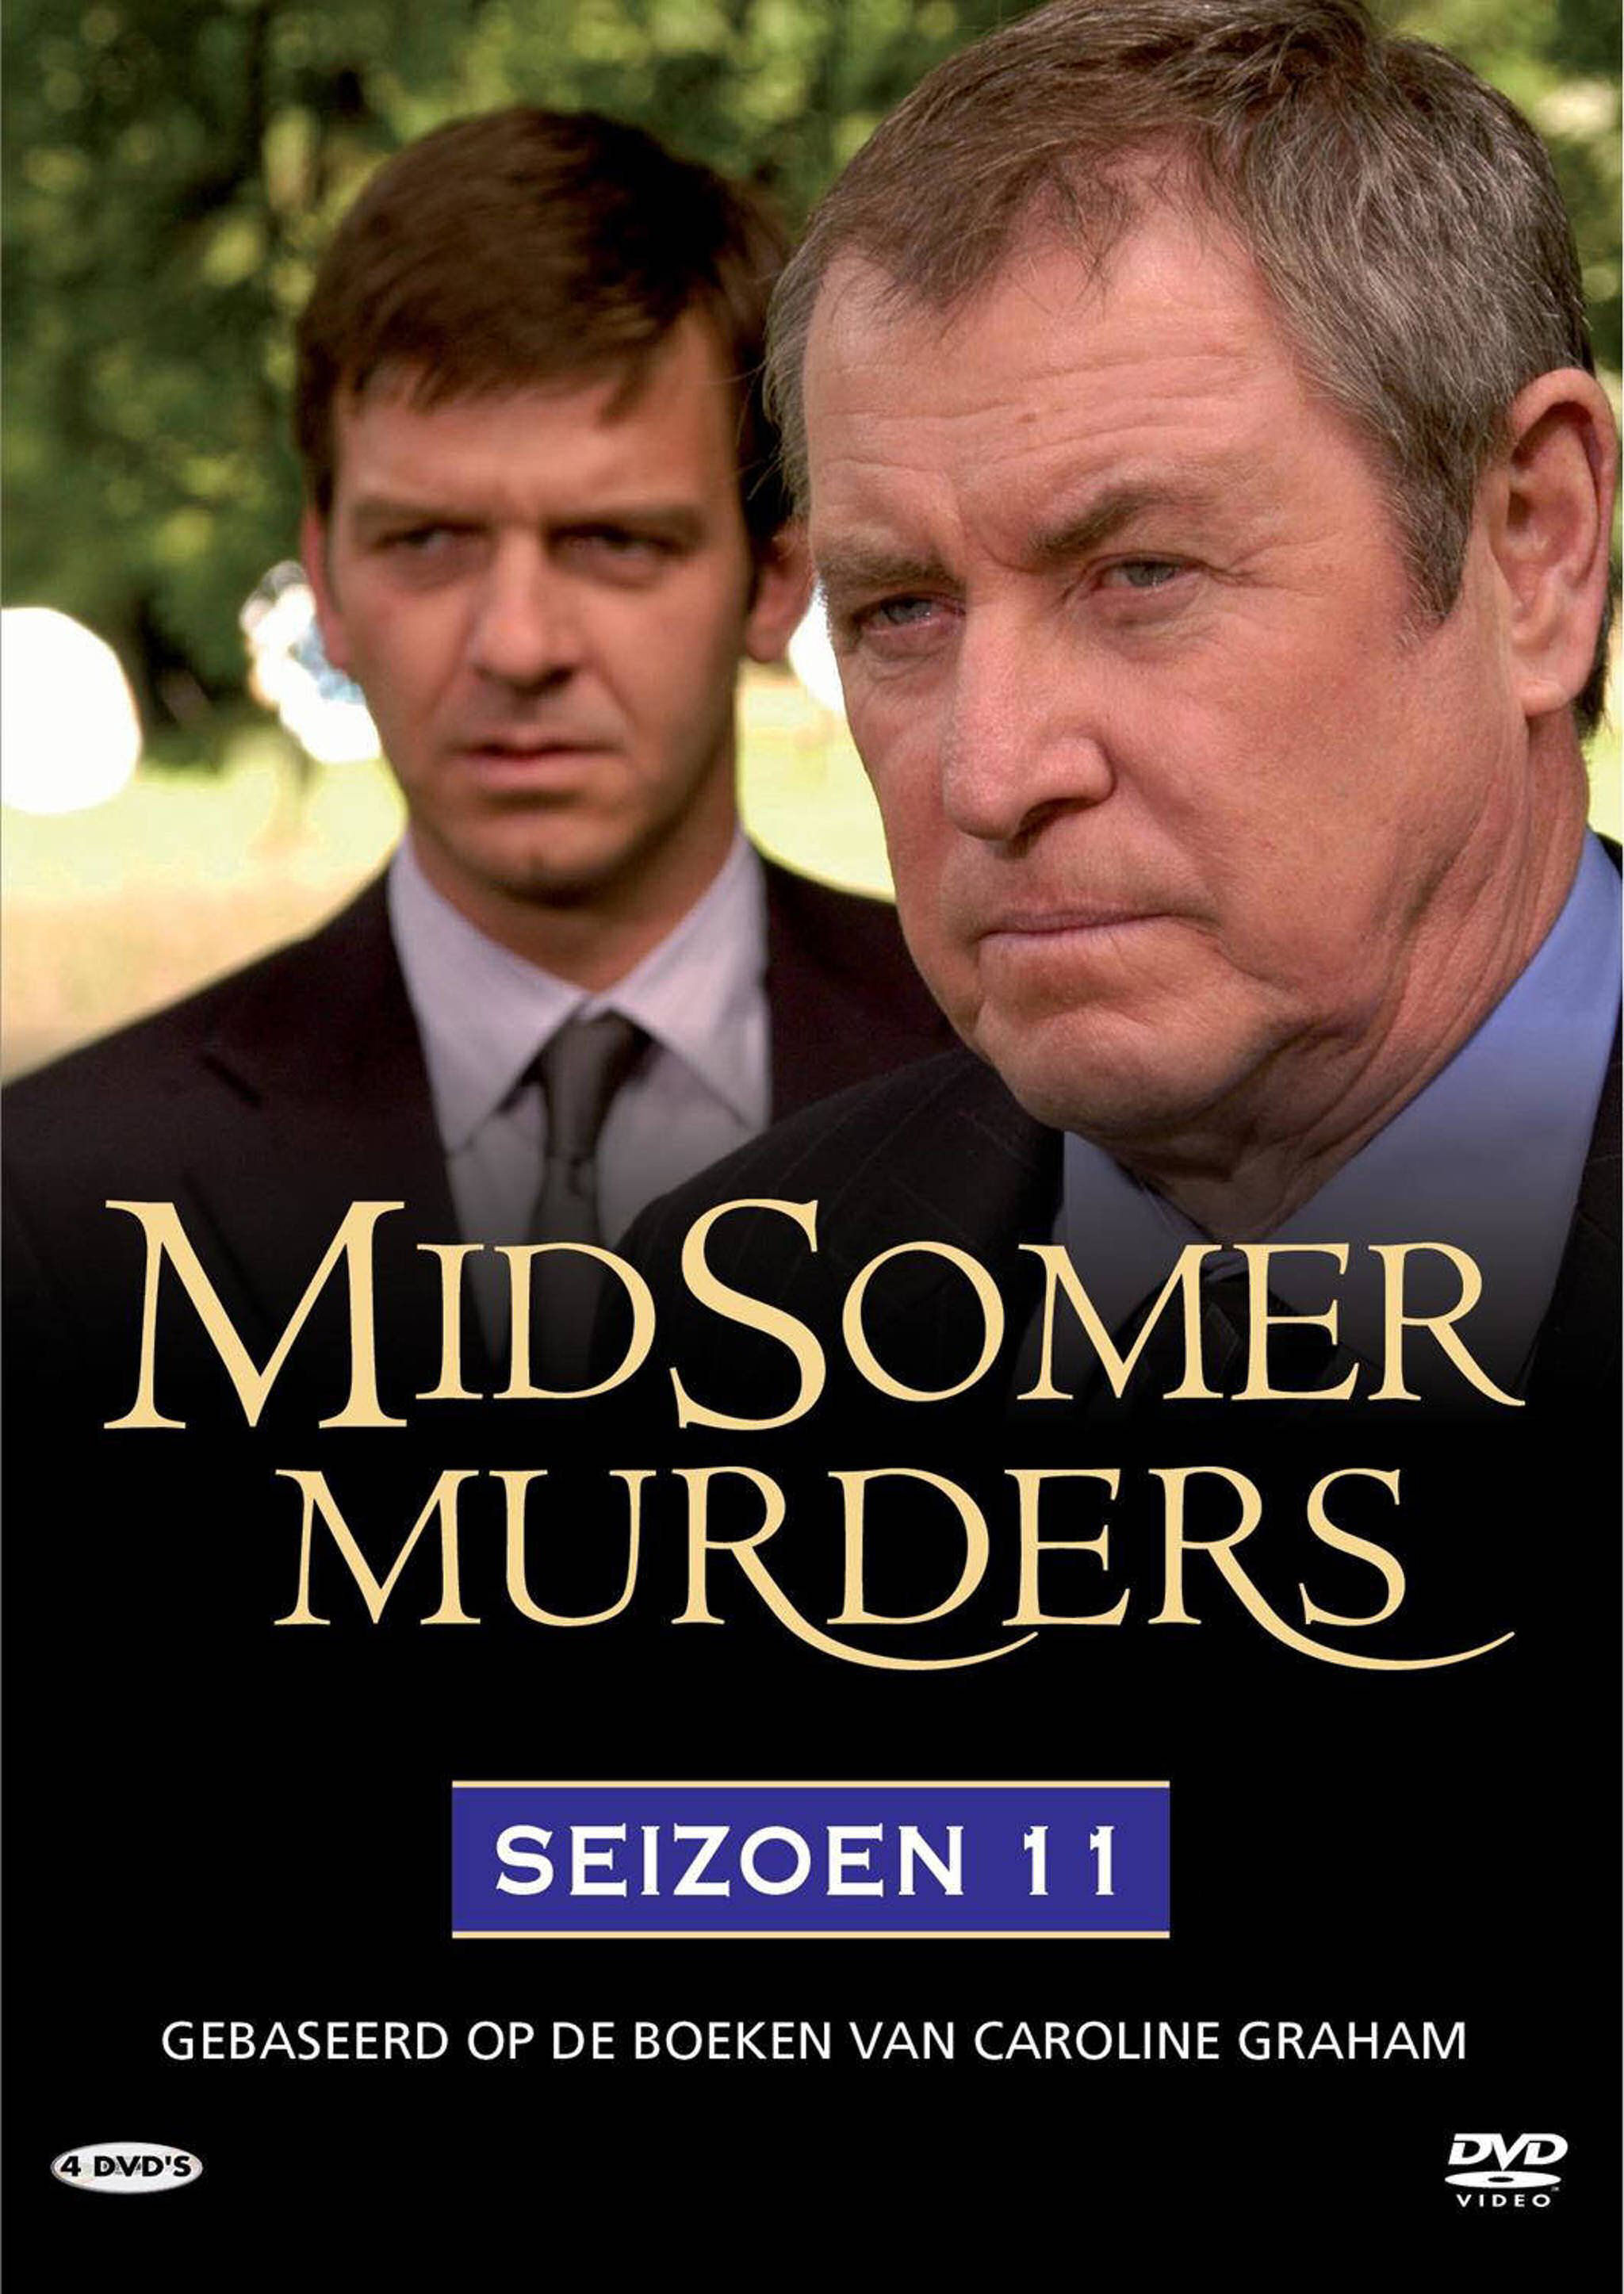 Midsomer Murders Seizoen 11 - DvD 4